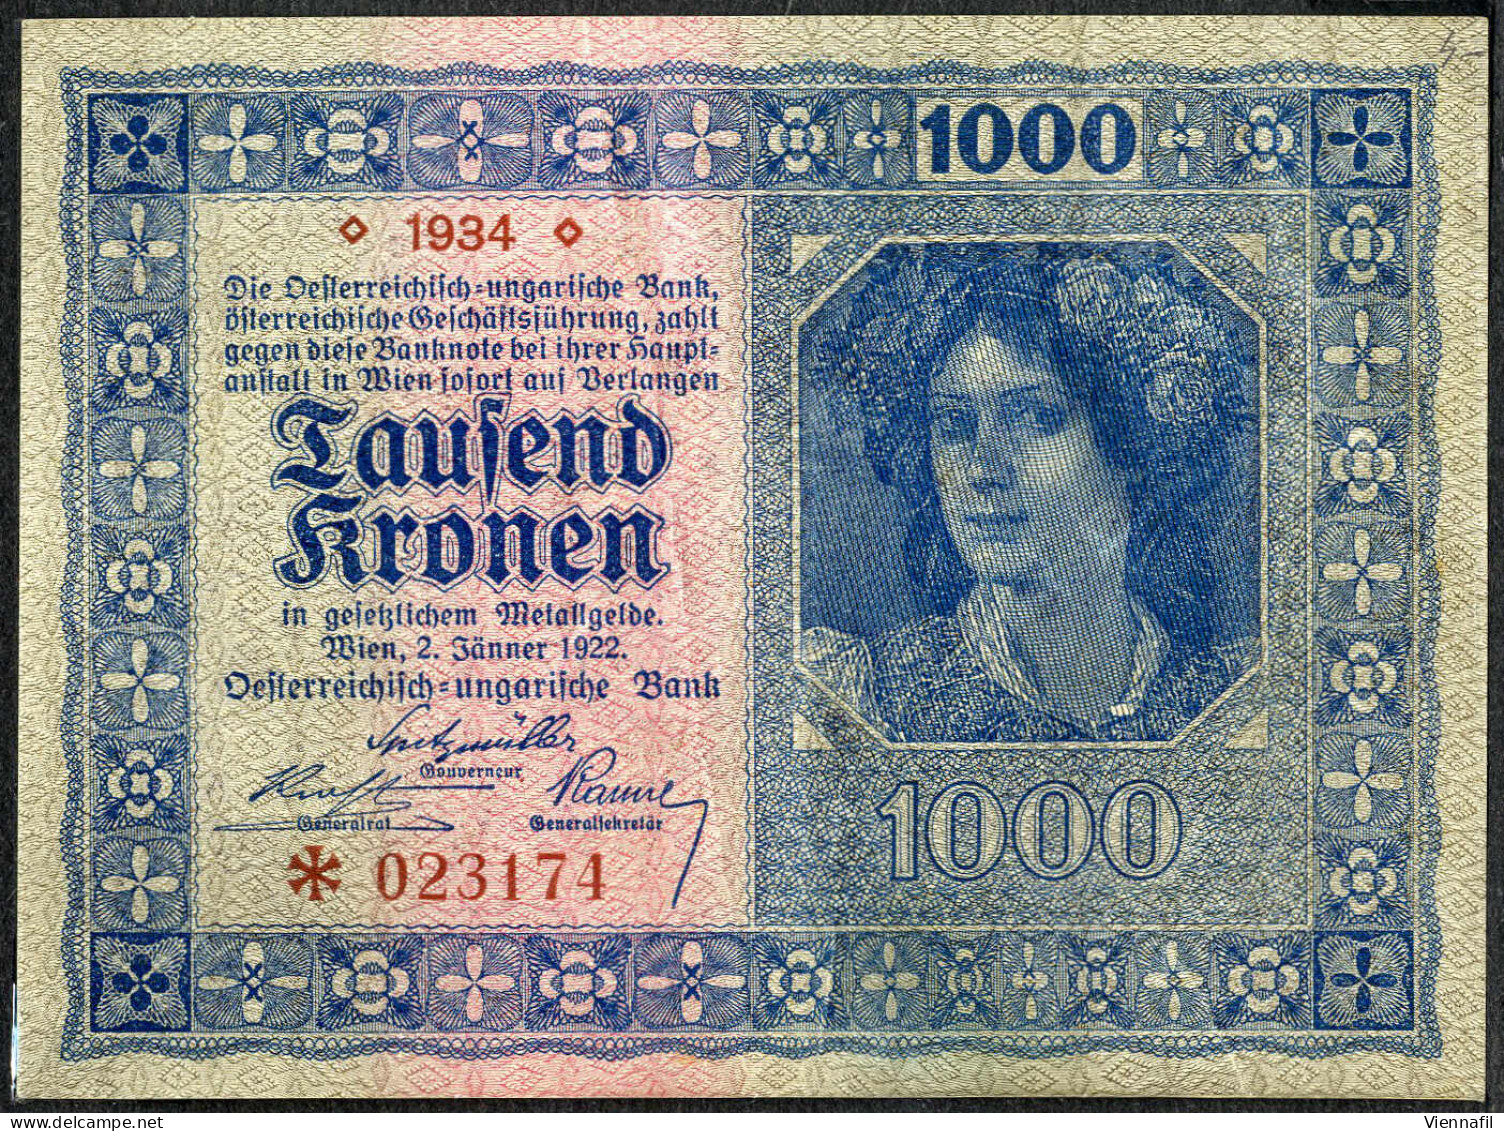 cover Deutschland, Übersee, Lot mit ca. 100 Banknoten, Abbildungen siehe Onlinekatalog